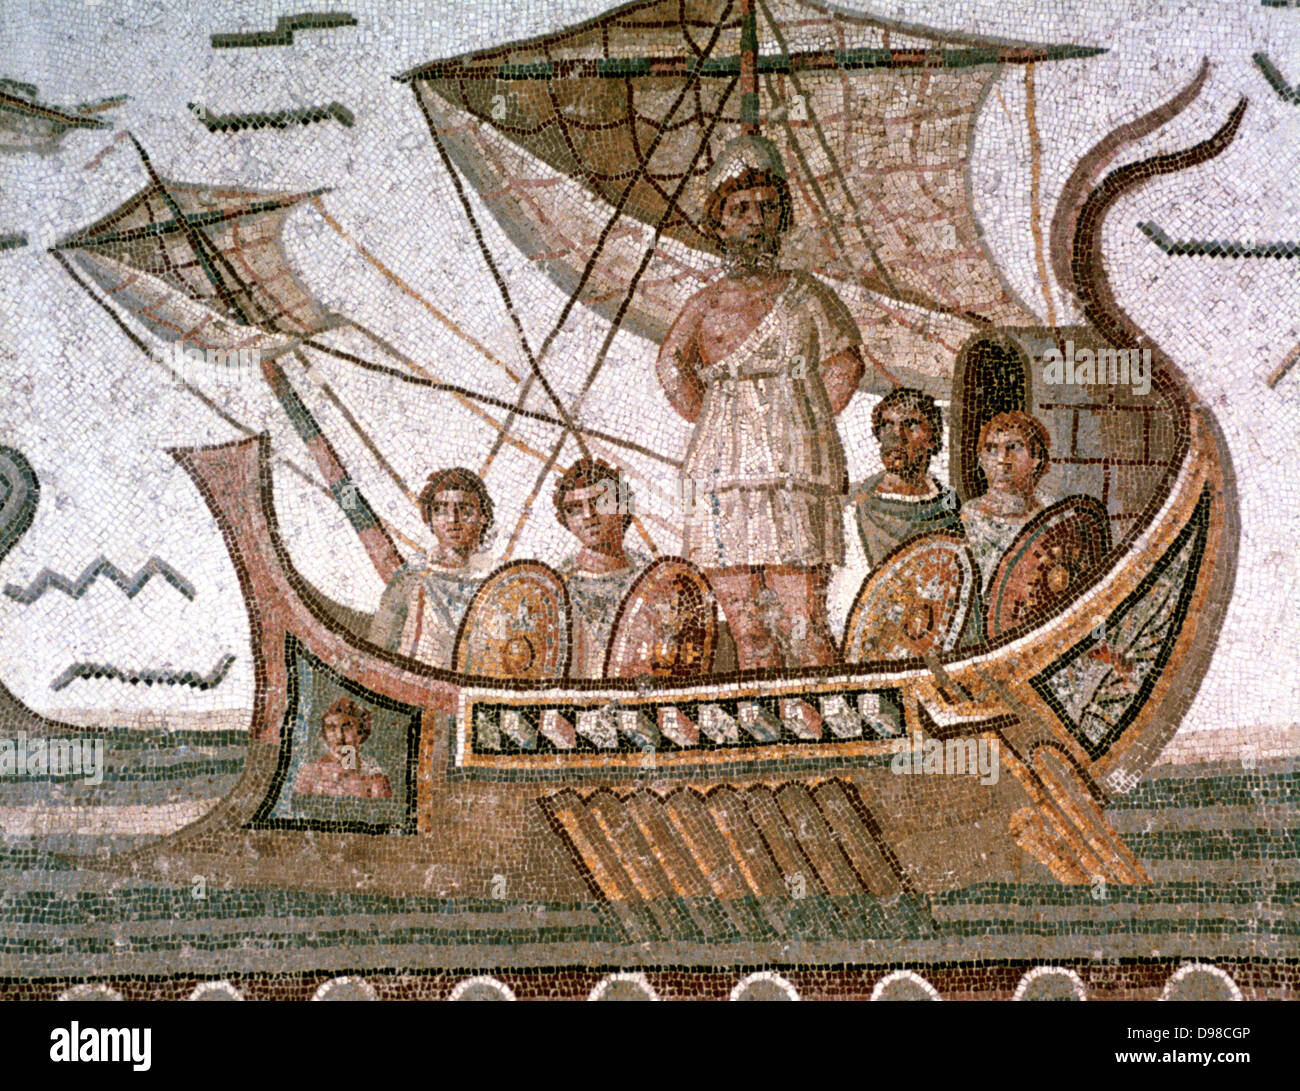 Odysseus (Ulysses) an den Mast seines Schiffes binden ihn von den Sirenen zu speichern. Homers "Odyssee", epische Griechische Gedicht. Römische Mosaik, 3. Jahrhundert n. Chr., Tunis. Stockfoto